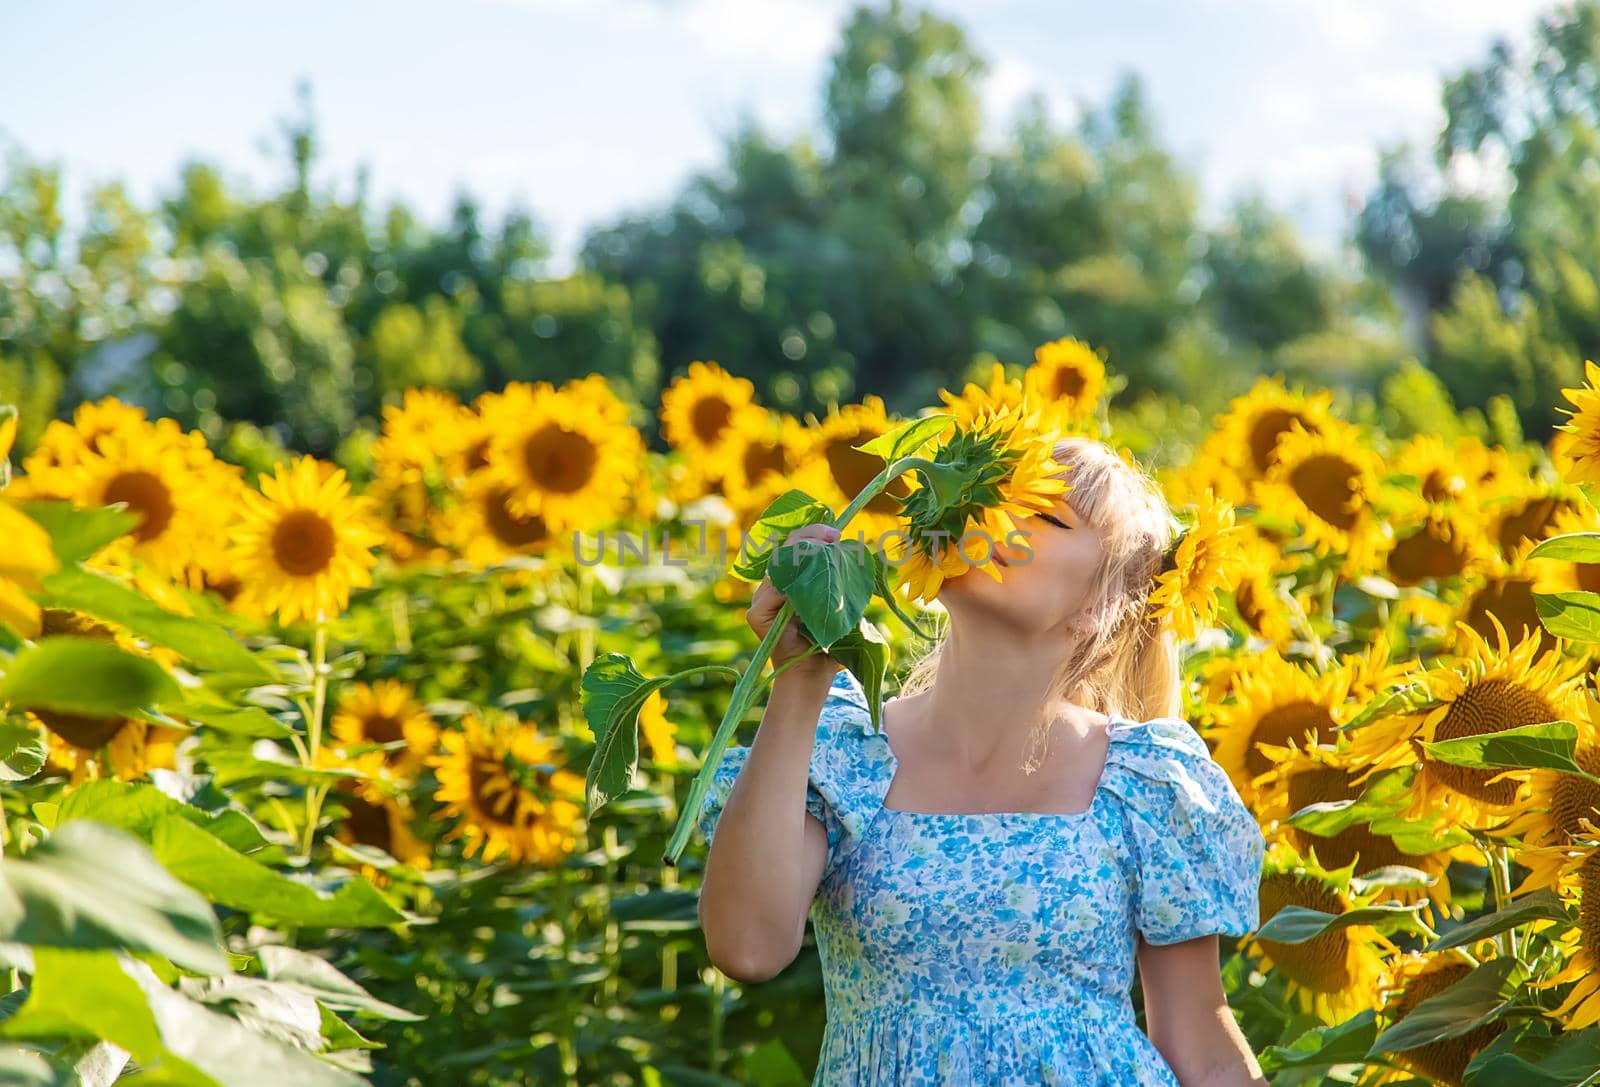 Woman in a field of sunflowers. Ukraine. Selective focus. by yanadjana